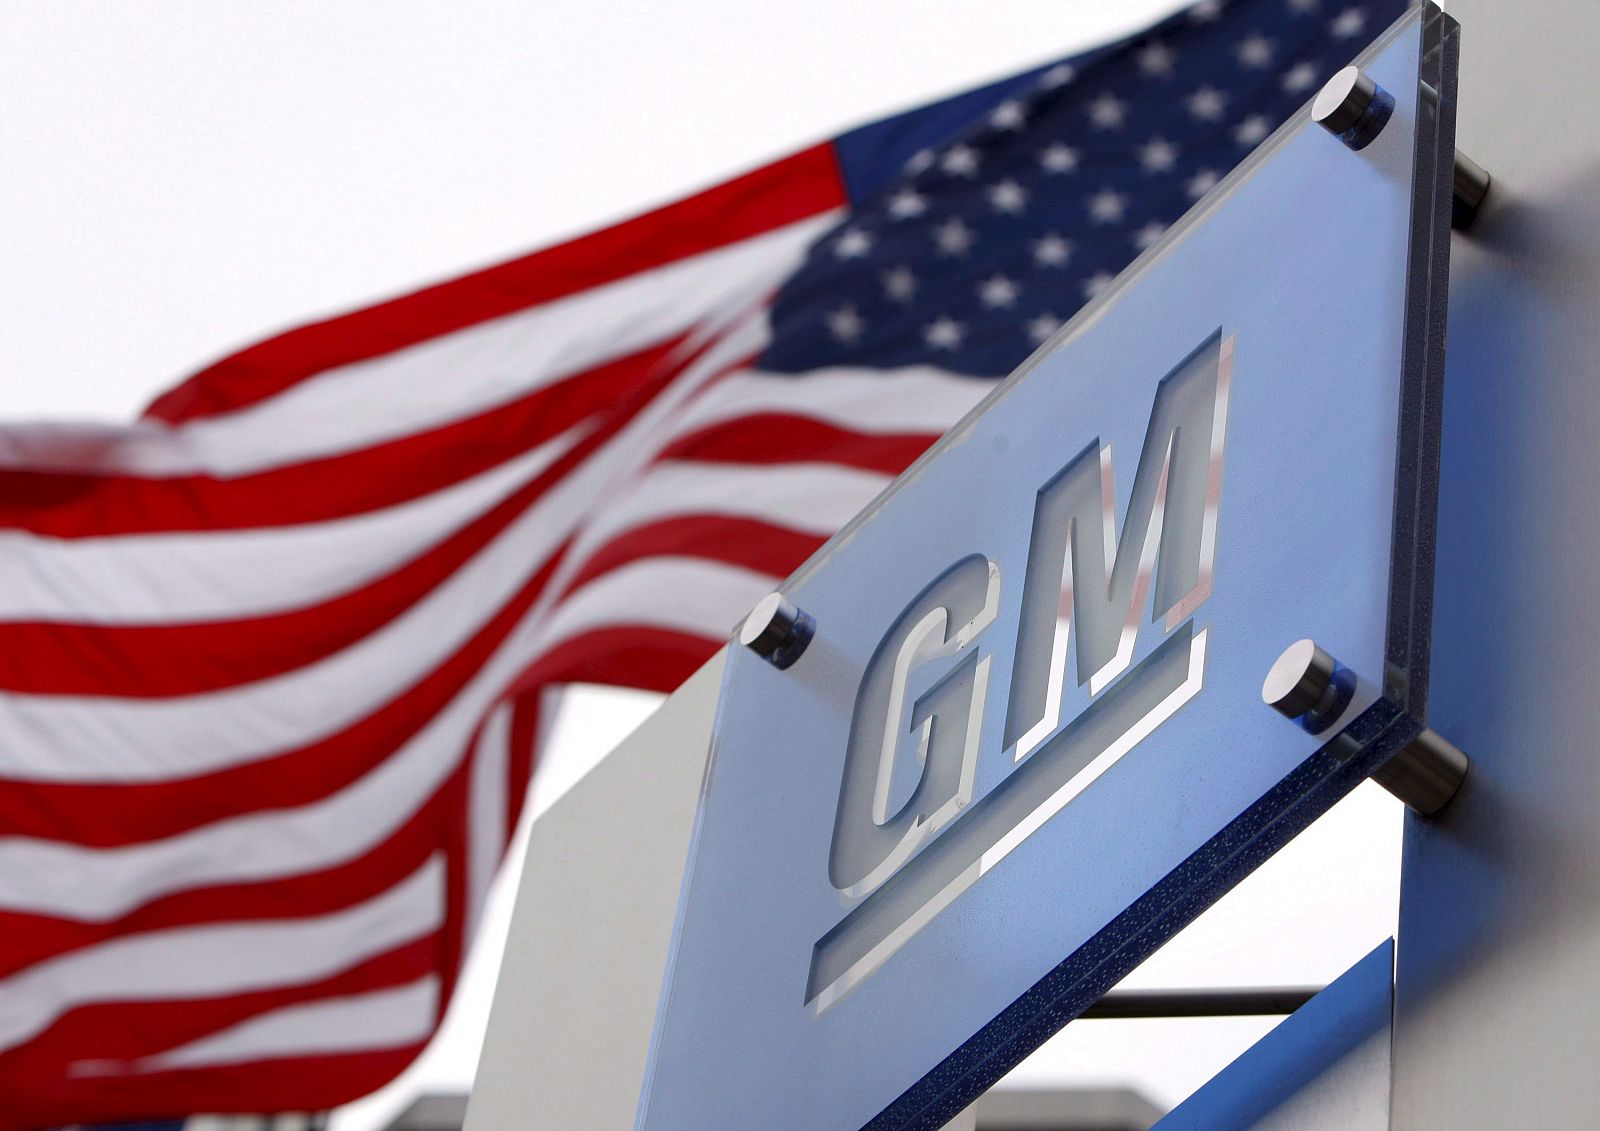 Sede central de la compañía General Motors en el Renaissance Center de Detroit, Michigan